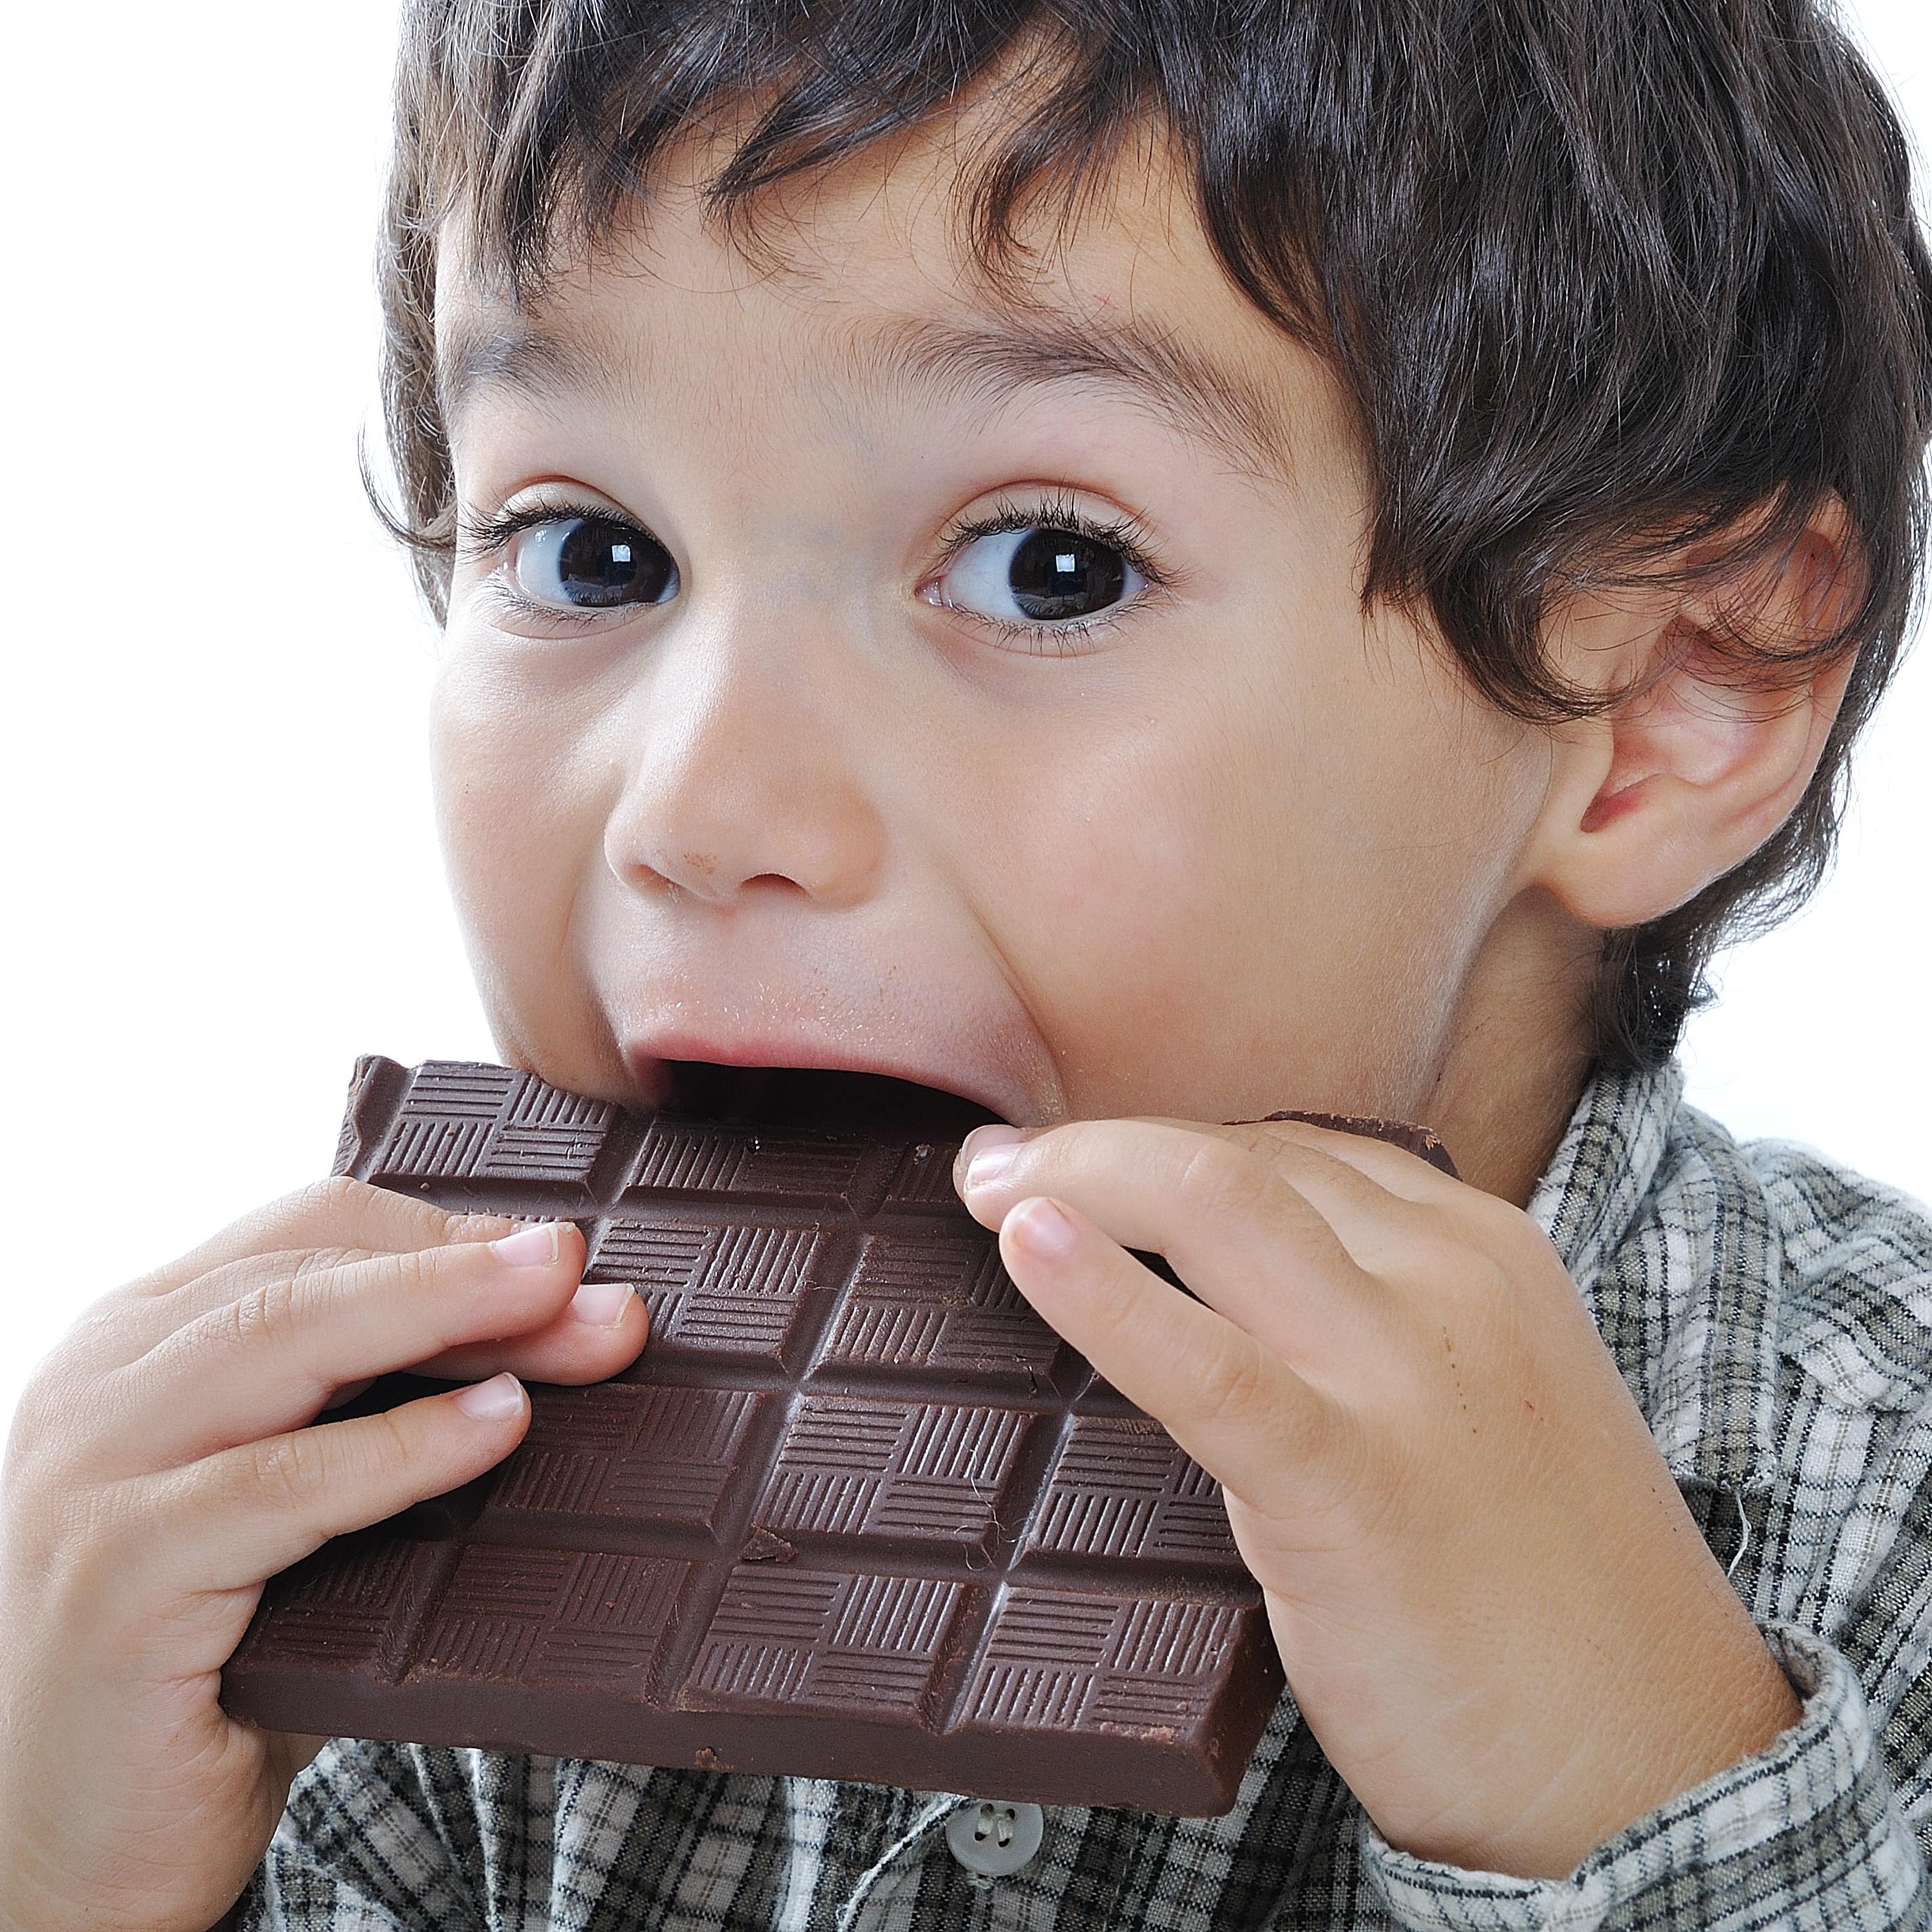 Kleinkind mit blau-gestreiftem Pulli vor eine Tasse Schokolade mit Gesicht draft. Der Junge grinst. 